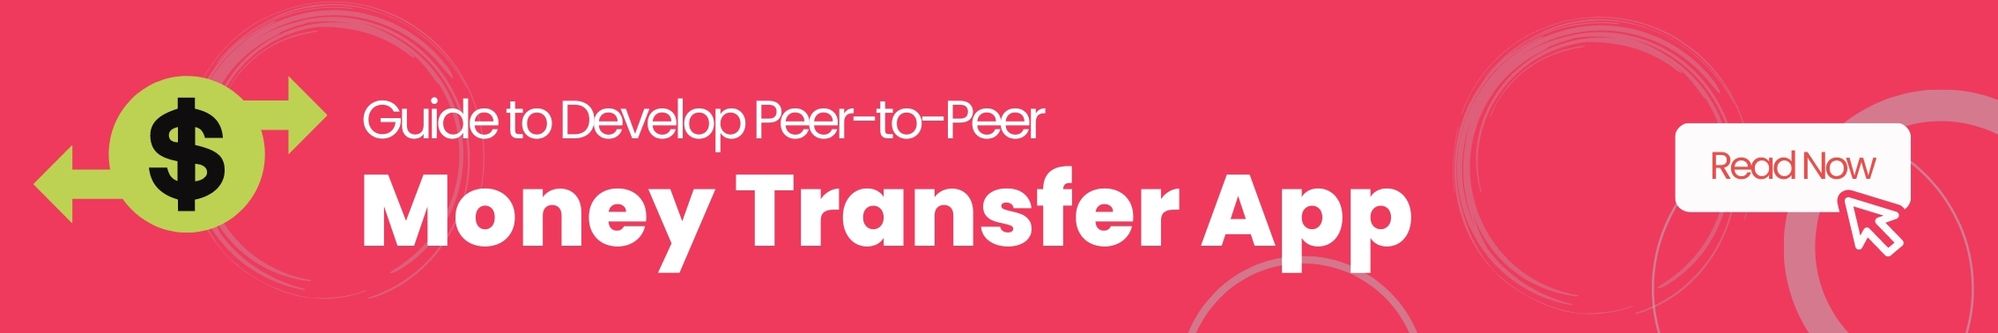 Money transfer app